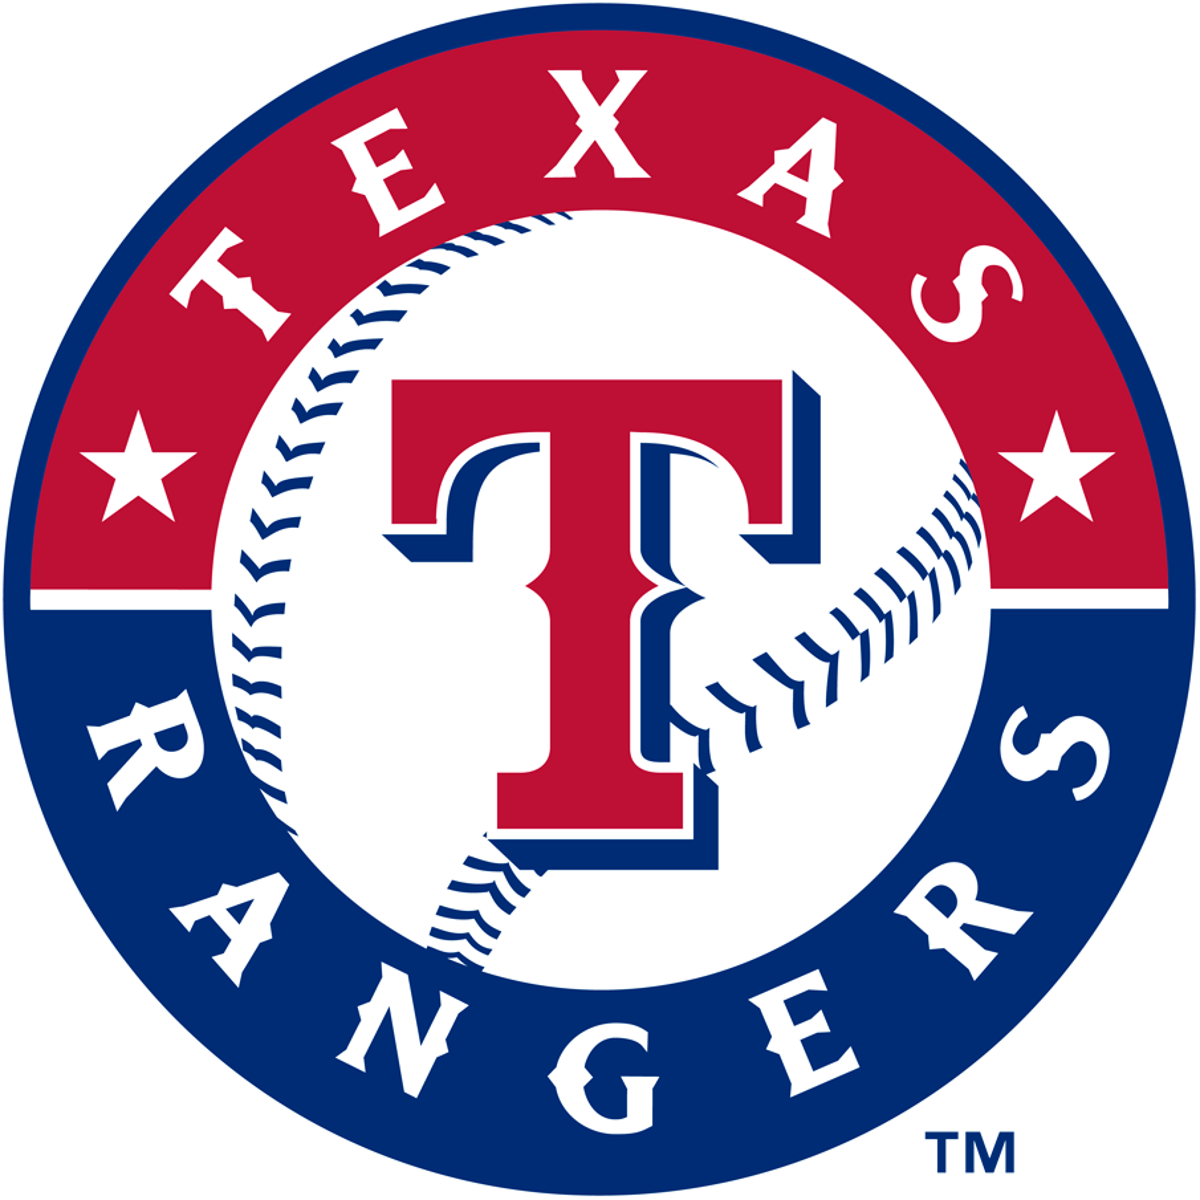 Texas Rangers 2020 Schedule